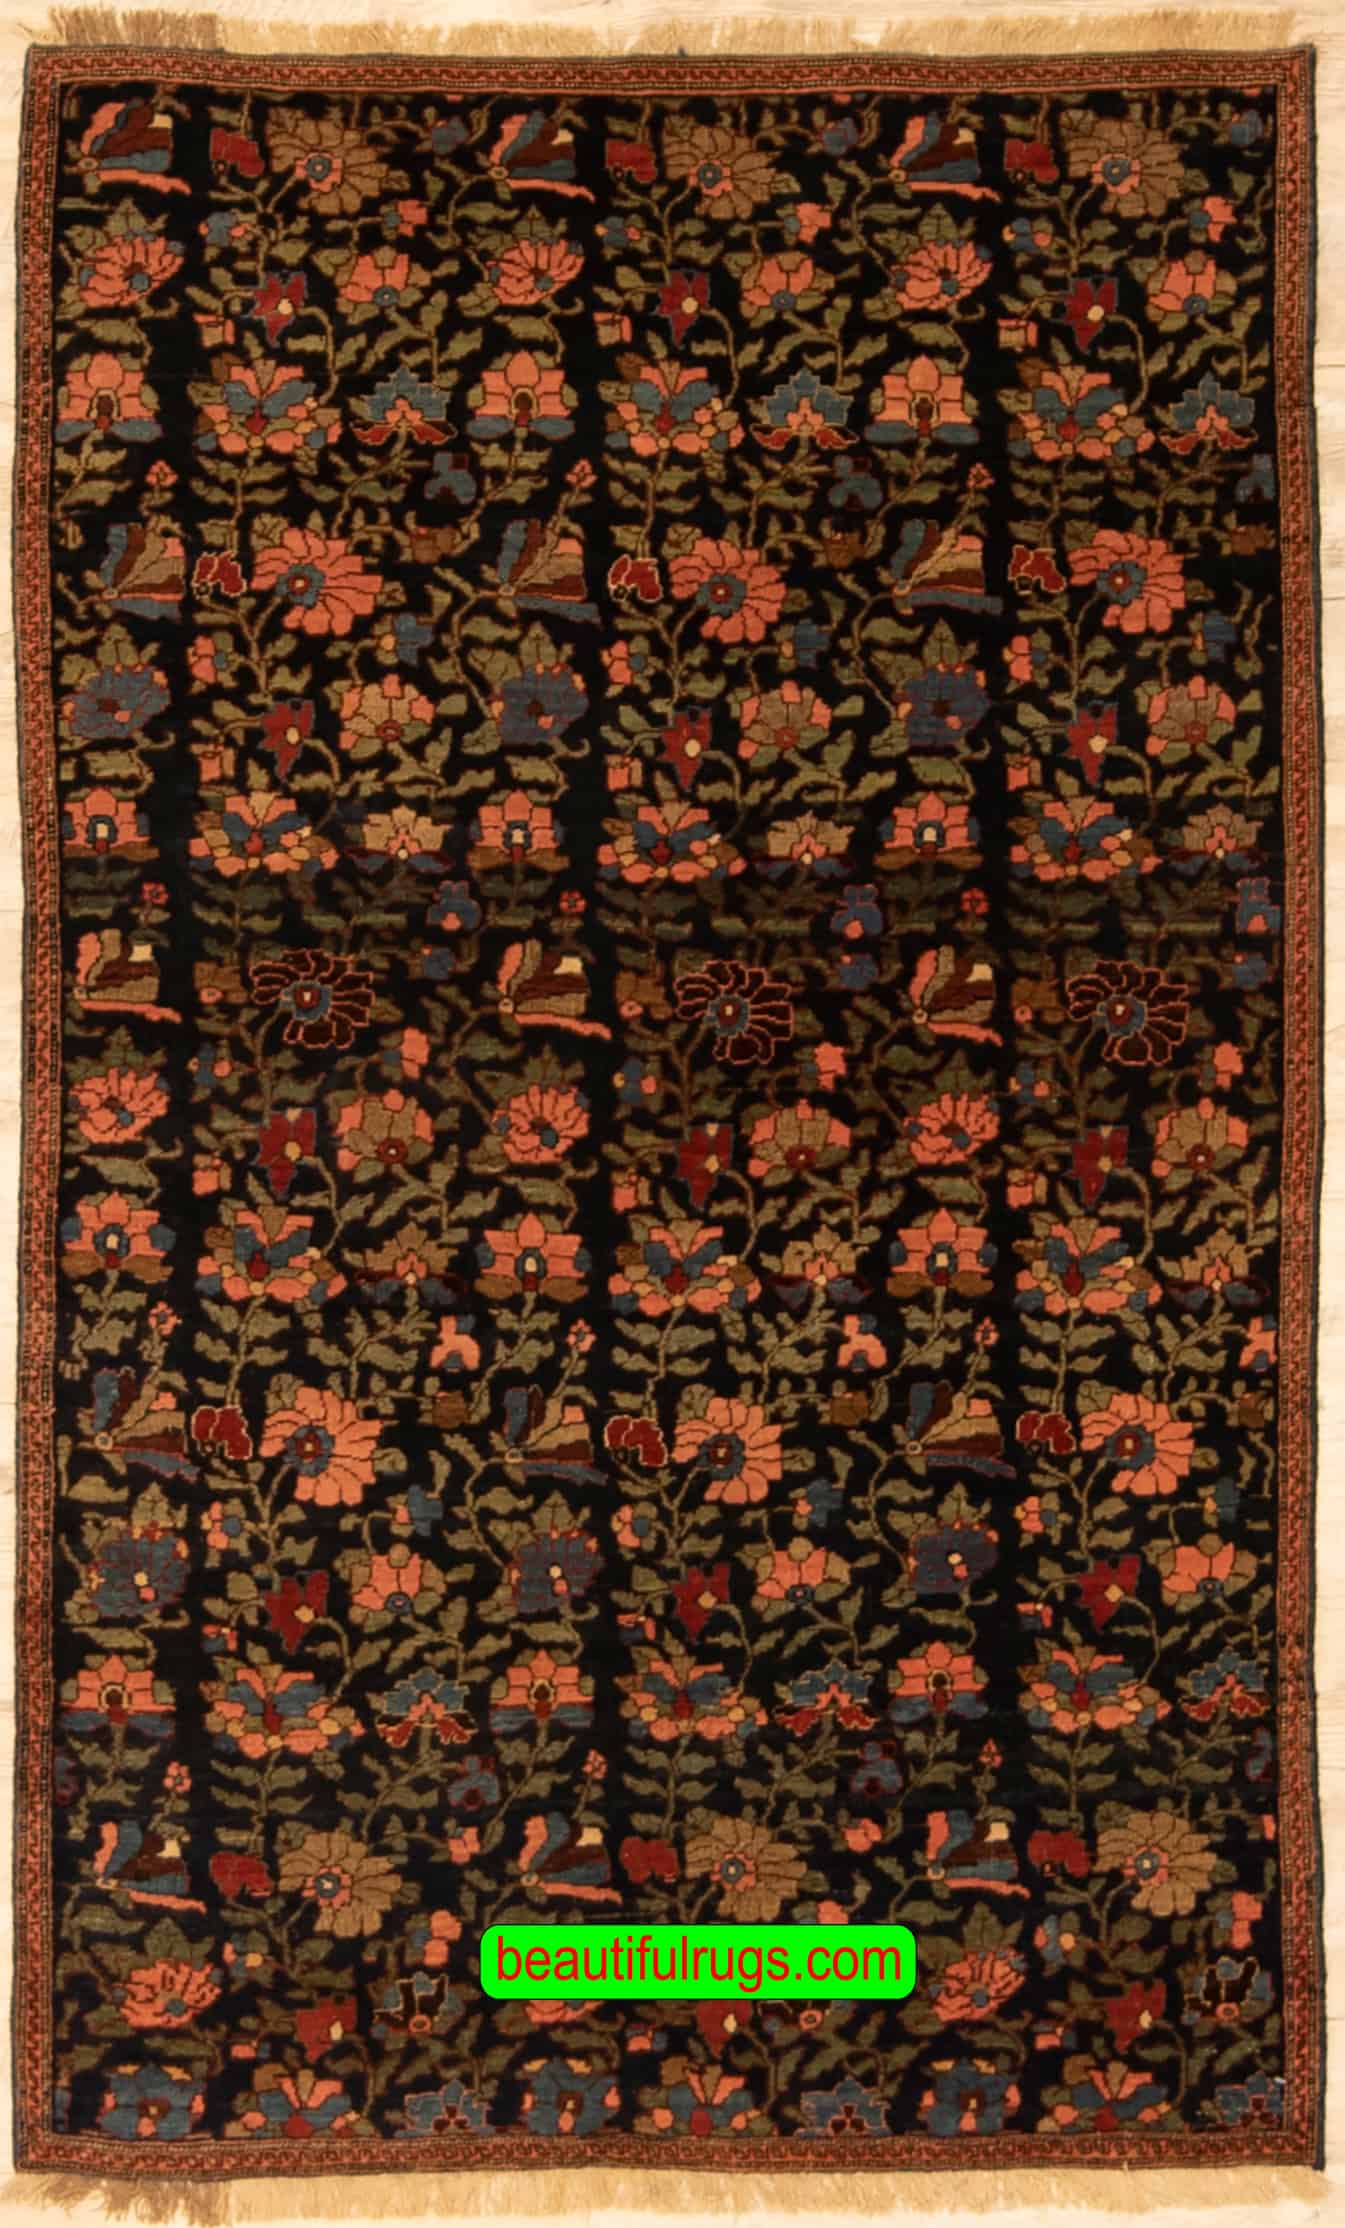 Handmade Antique Persian Bijar Rug, Floral Design Vegetable Dyed Rug